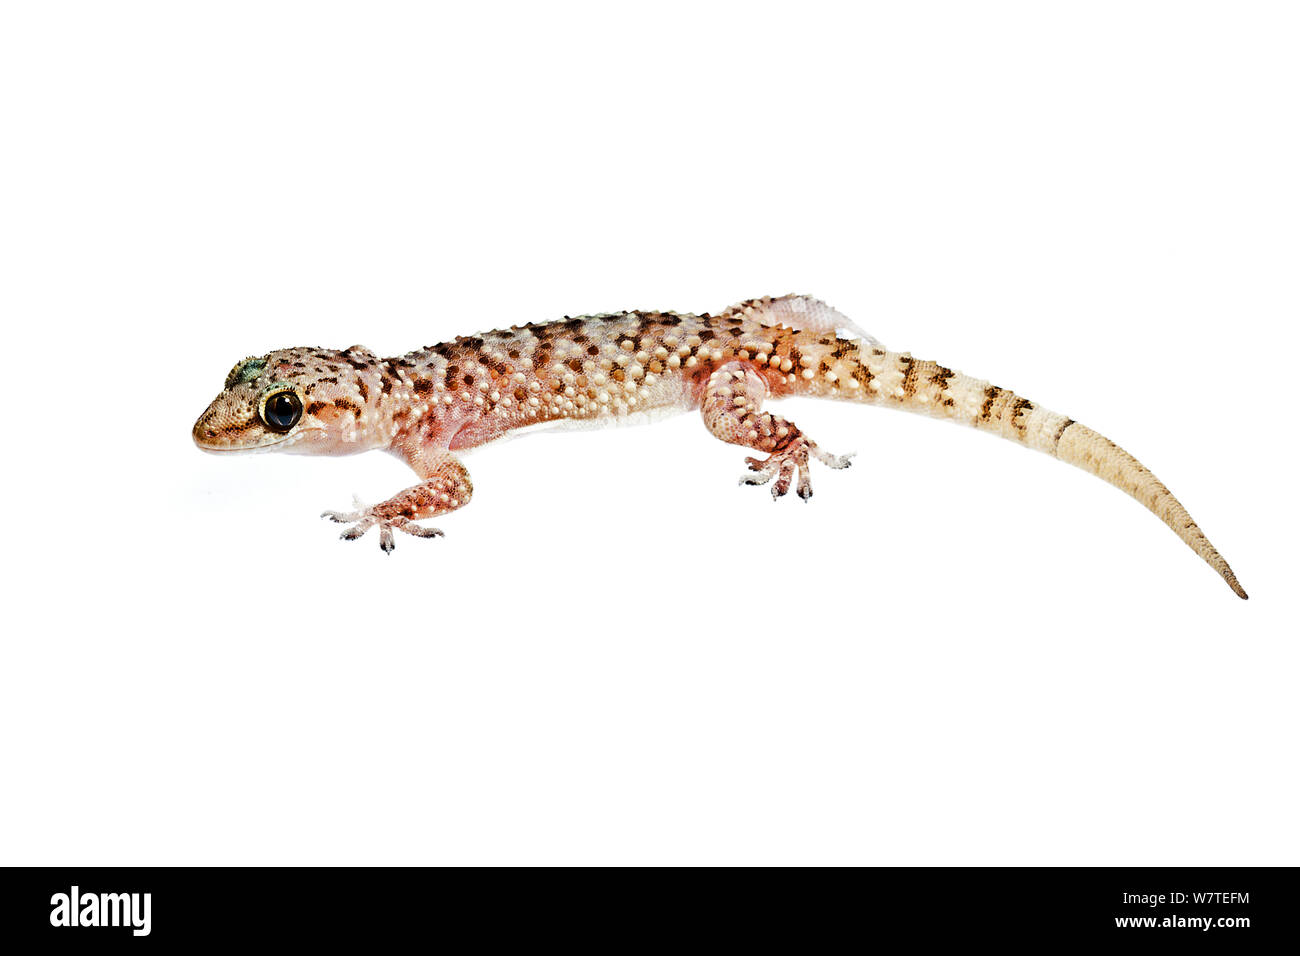 Seitliche Sicht auf das Mittelmeer Haus Gecko (Hemidactylus turcicus), Kreta, Griechenland, August. Meetyourneighbors.net Projekt. Stockfoto